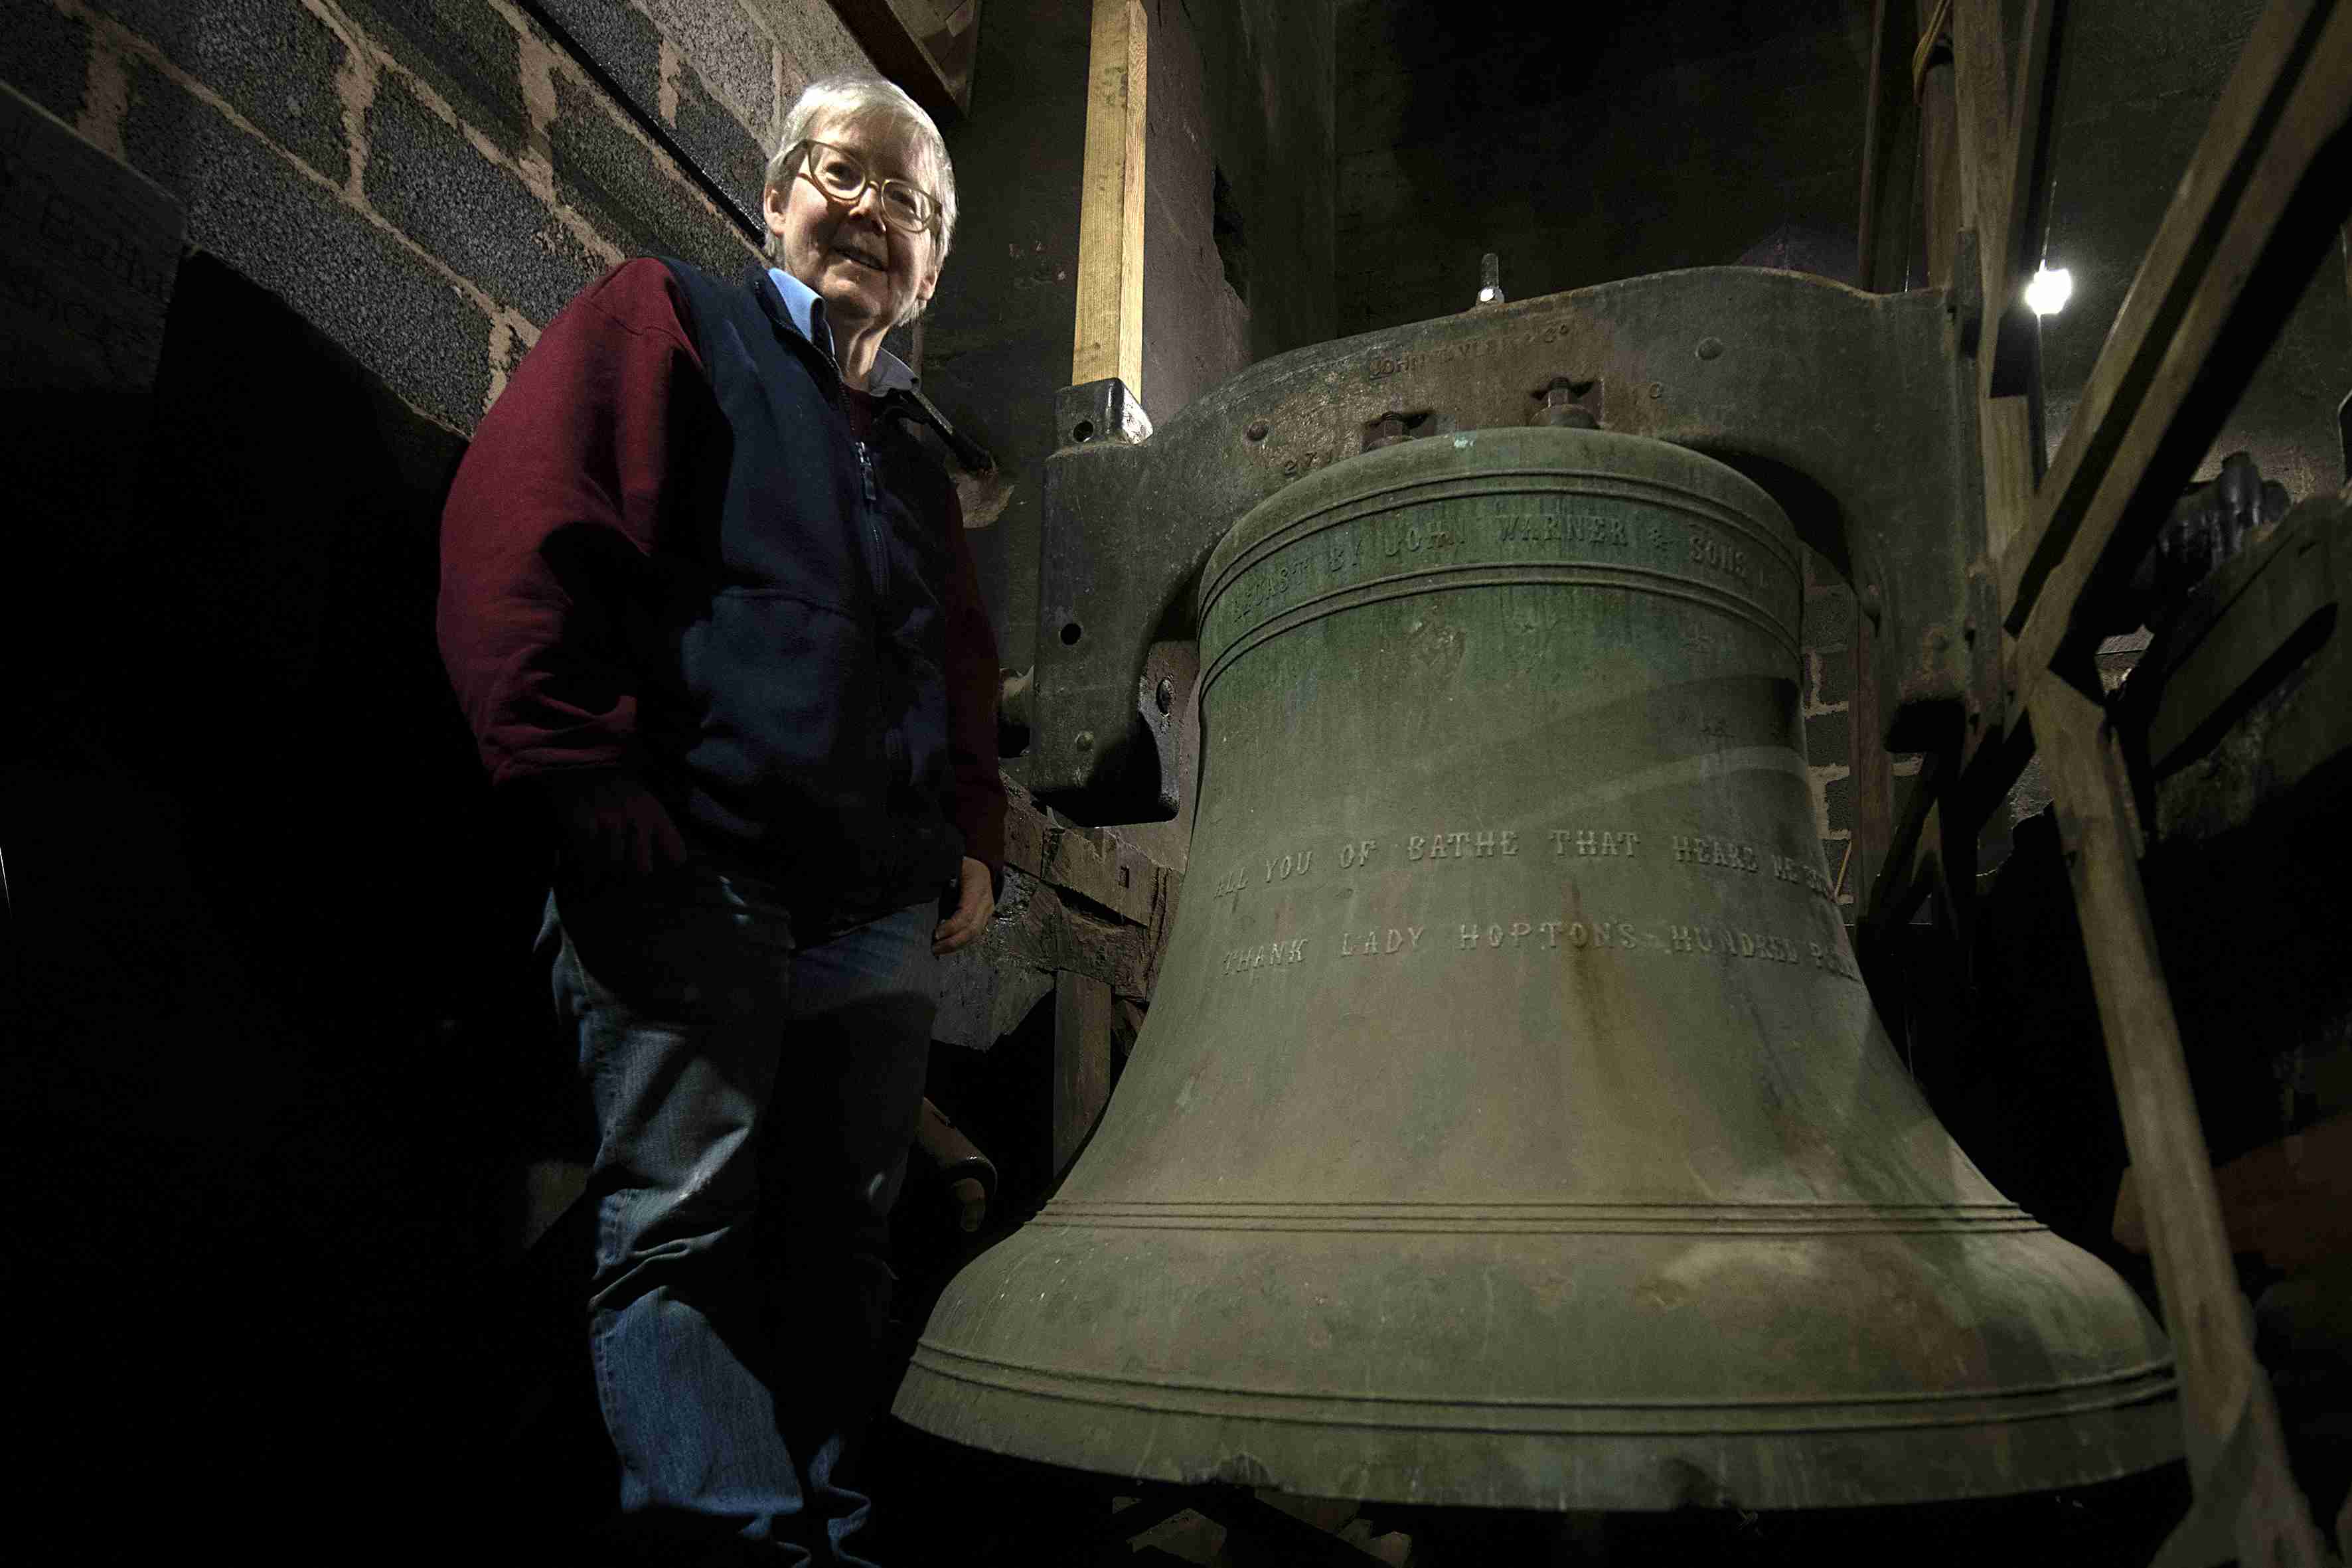 Bath Abbey's tenor bell